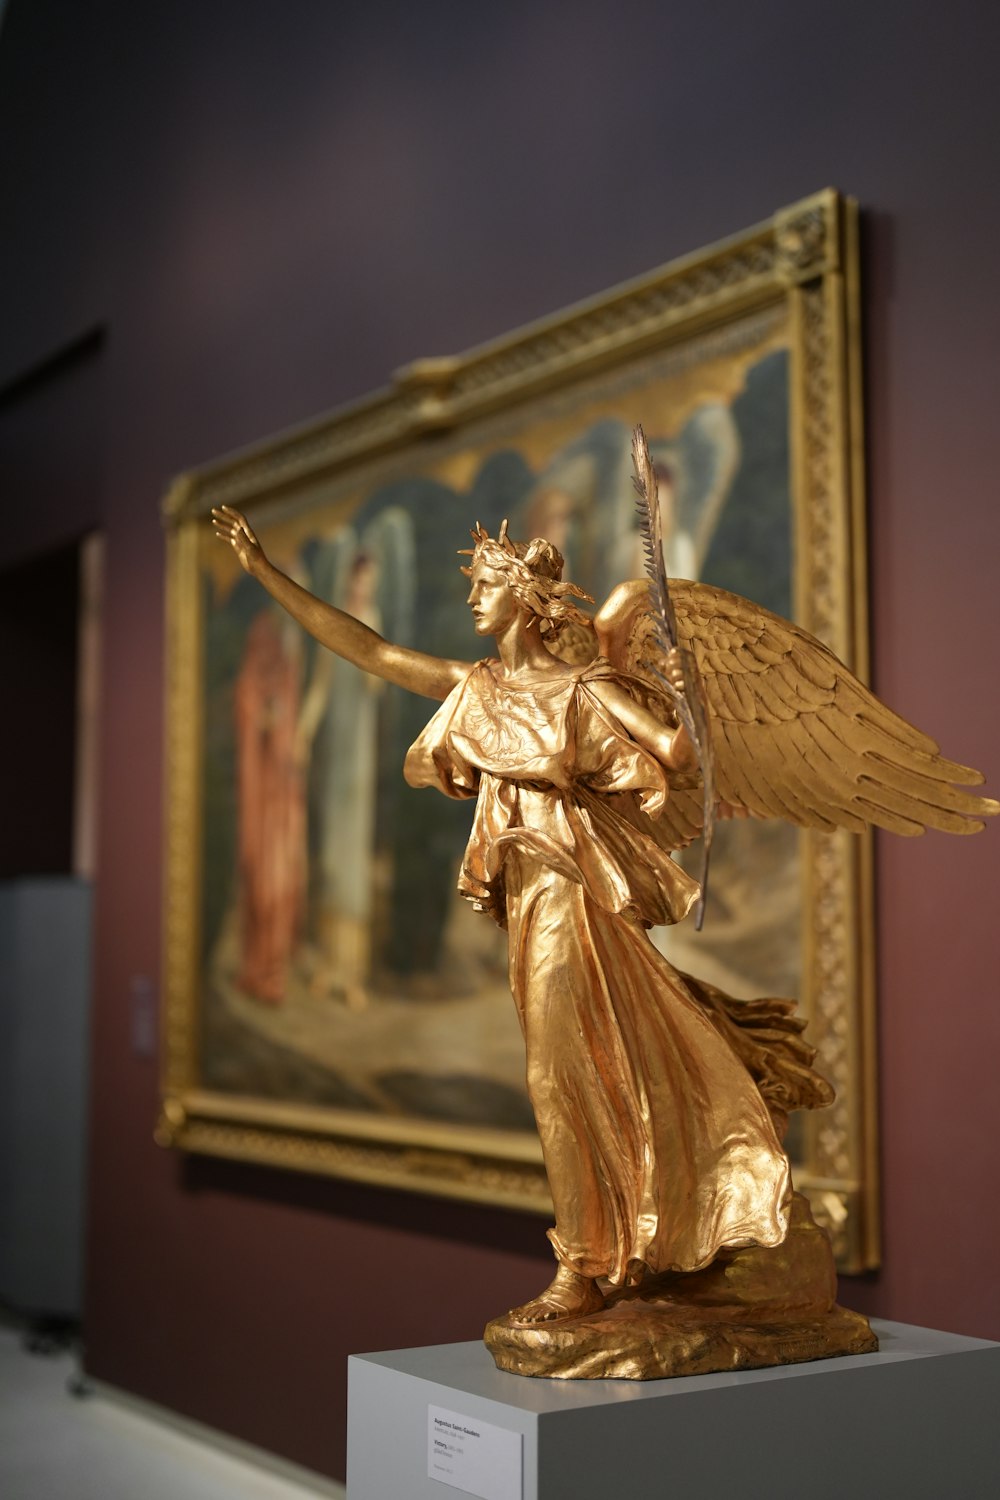 a golden statue of an angel holding a staff